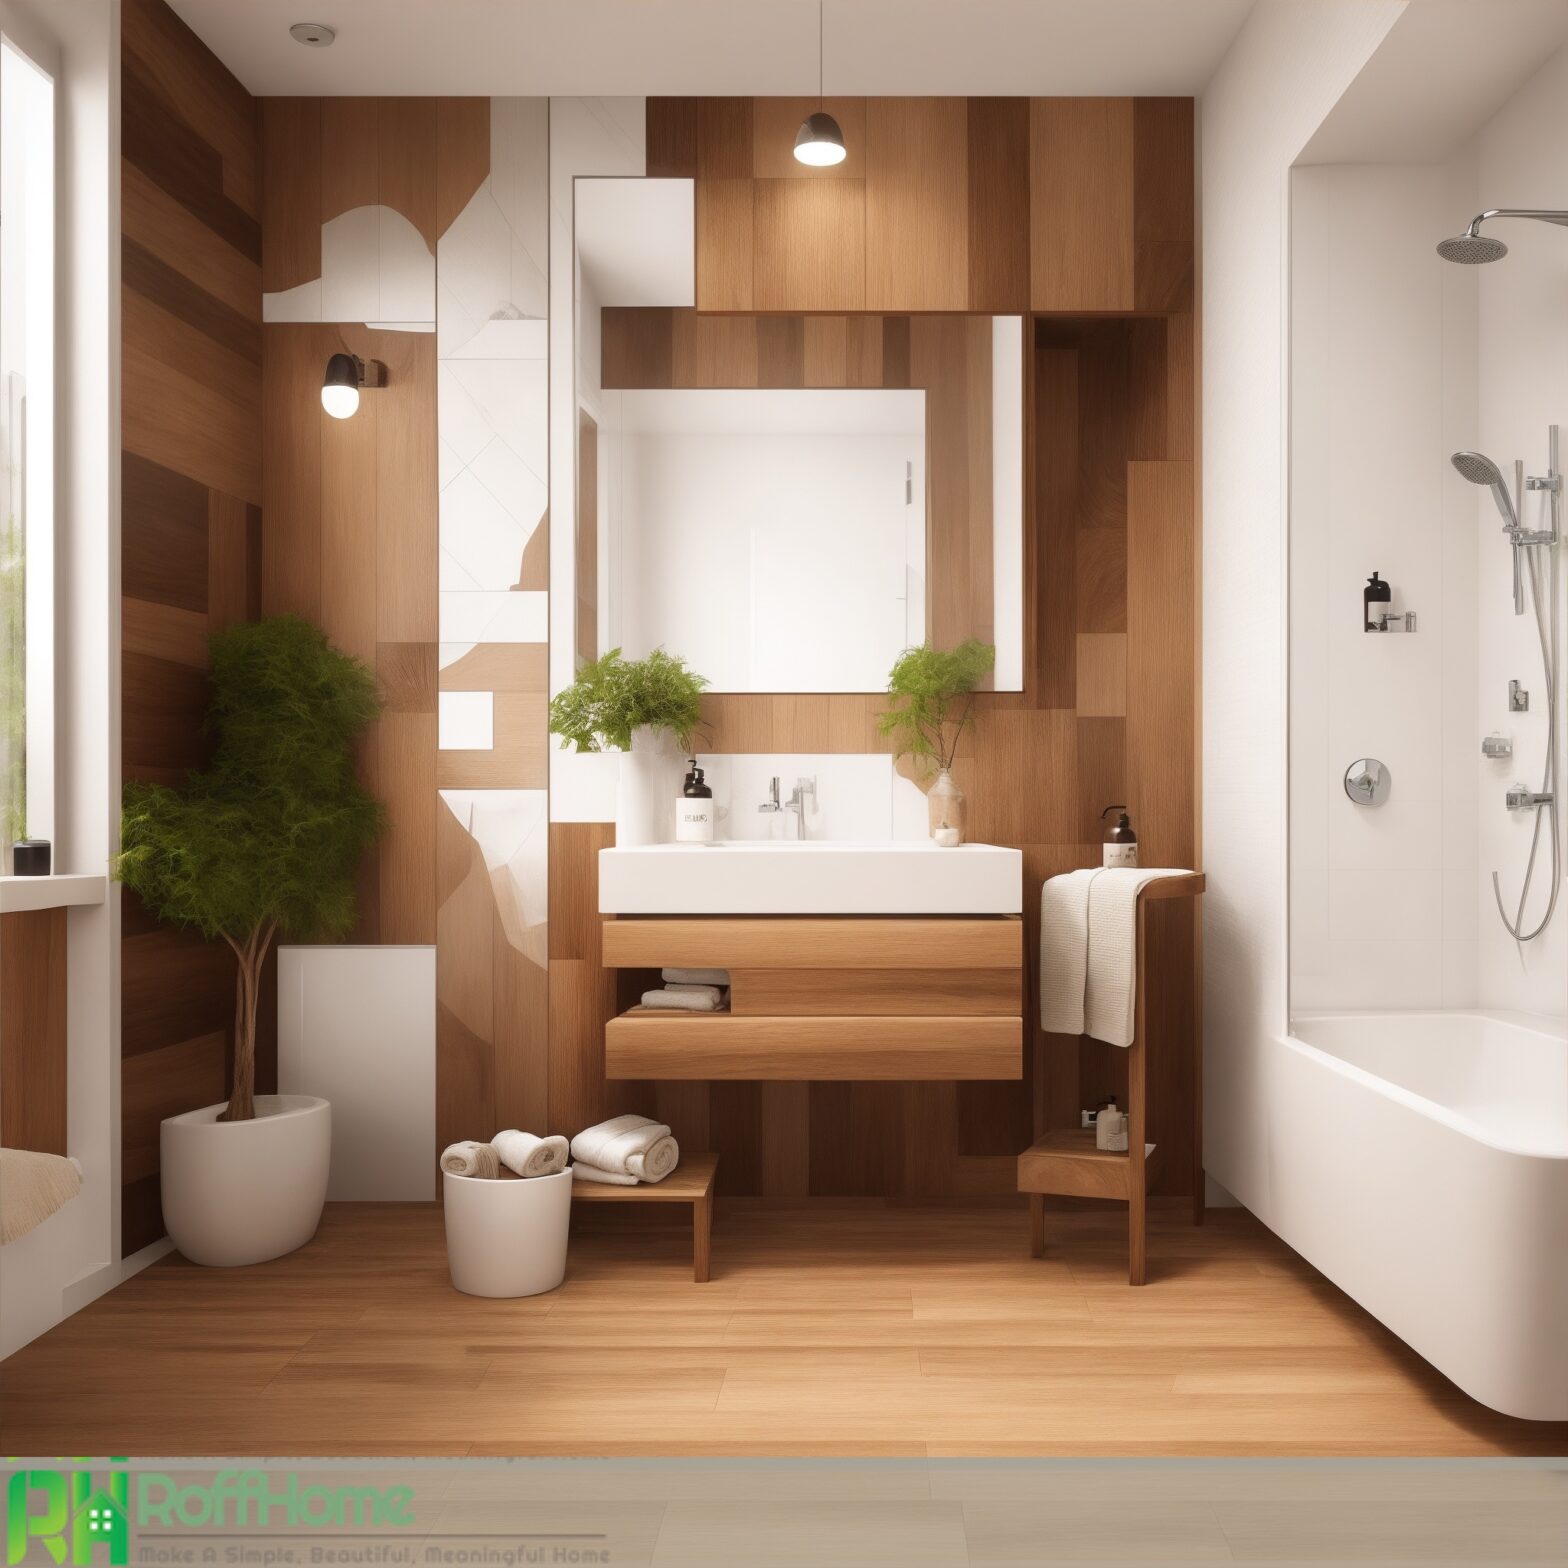 bathroom wood tile ideas